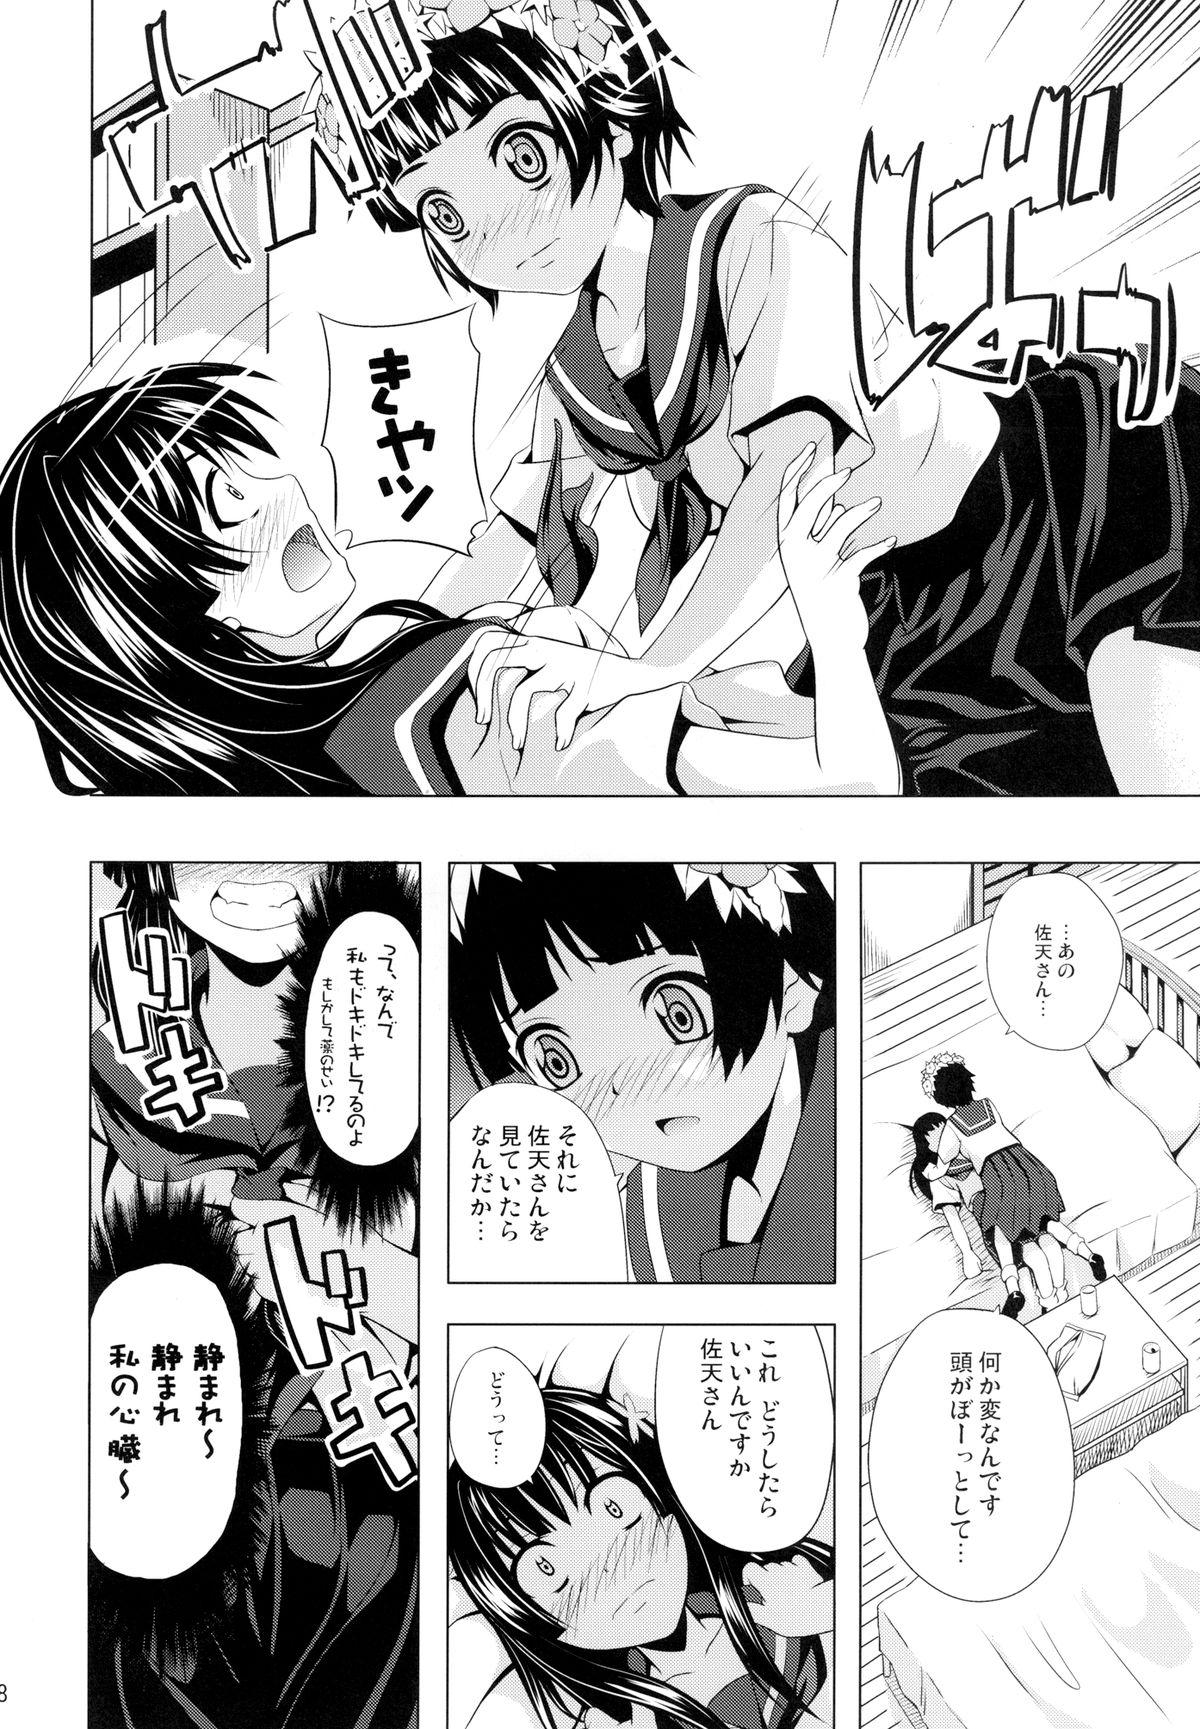 Sex Tape Uiharu no U Saten no Sa - Toaru kagaku no railgun Oriental - Page 8